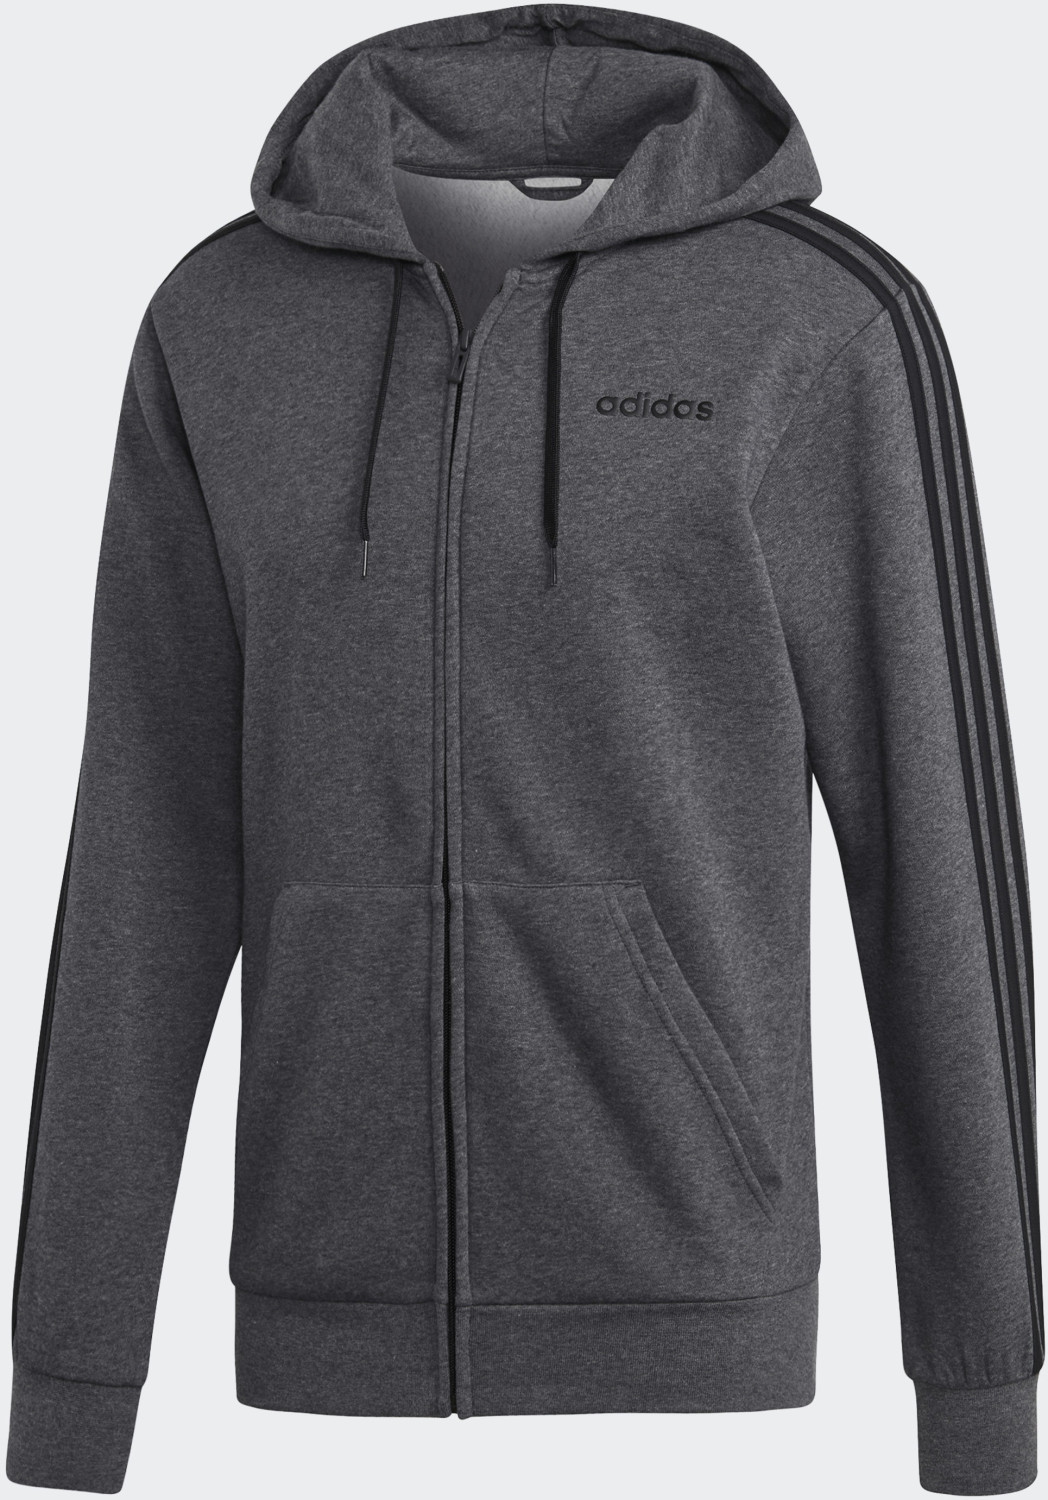 € grey 3-Streifen 59,95 bei Preisvergleich dark | Kapuzenjacke Adidas Essentials heather/black Fleece (DX2528) ab